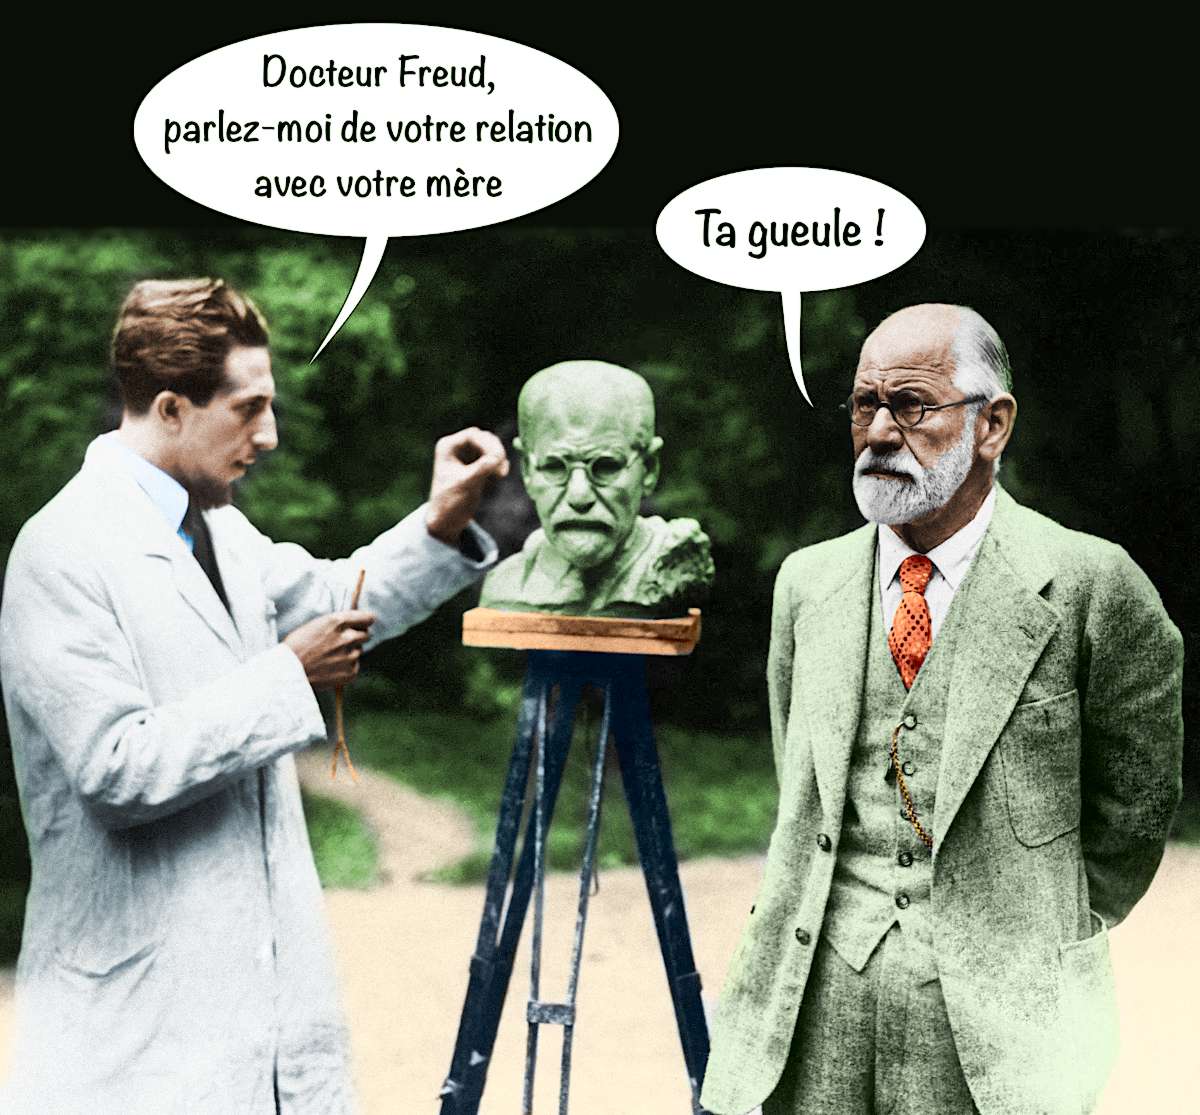 Sigmund Freud parle de sa relation avec sa mère au sculpteur Oscar Nemon